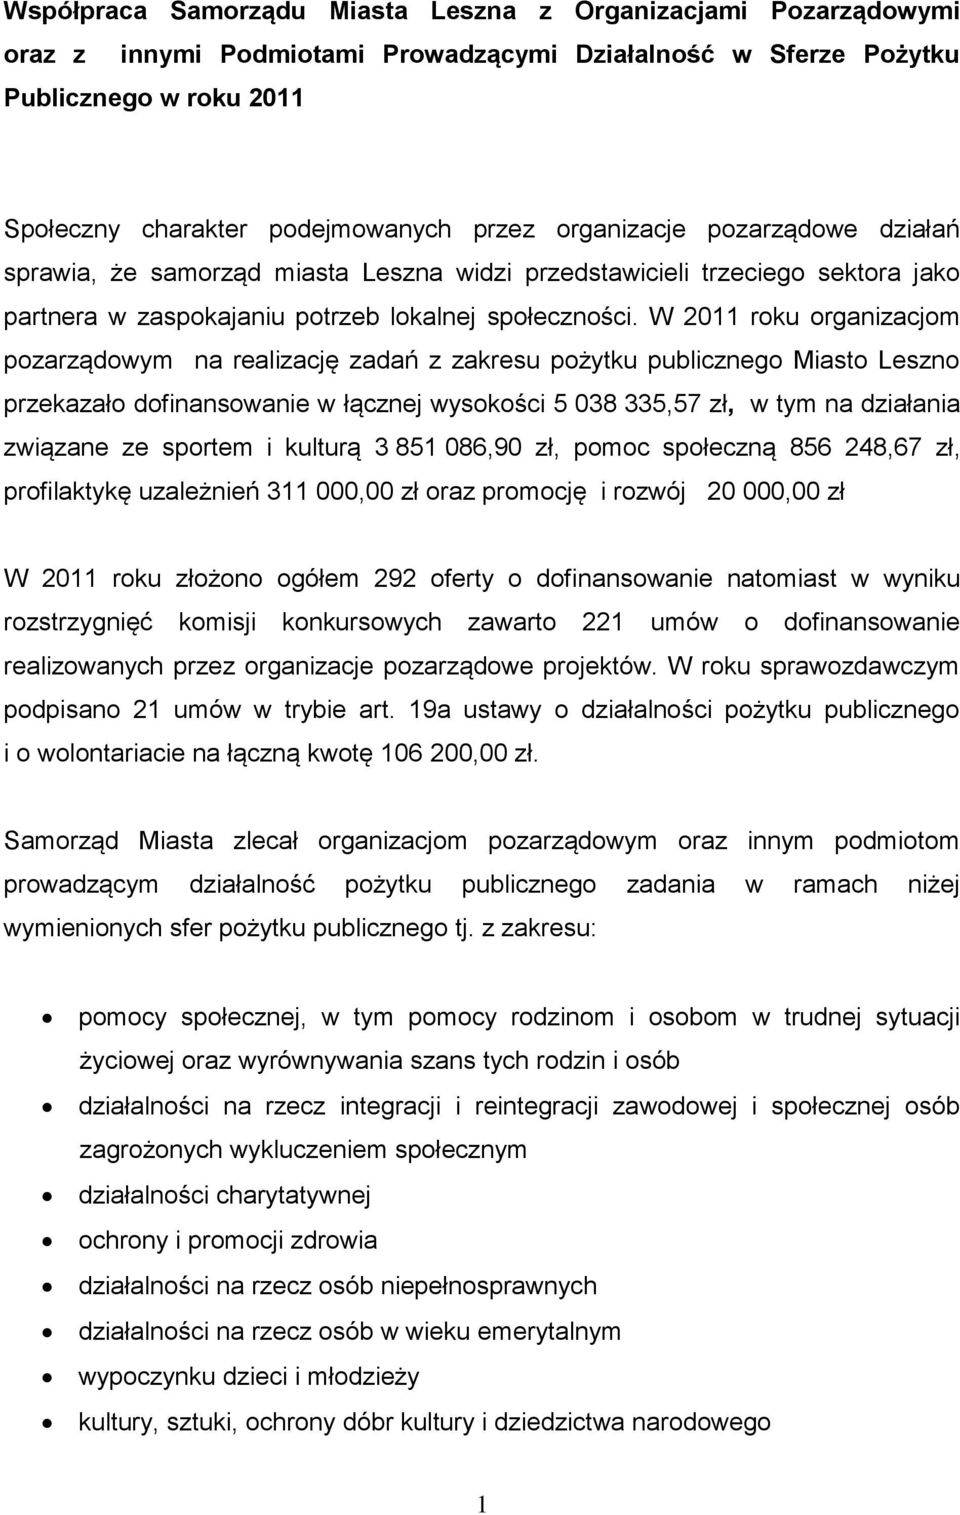 W 2011 roku organizacjom pozarządowym na realizację zadań z zakresu pożytku publicznego Miasto Leszno przekazało dofinansowanie w łącznej wysokości 5 038 335,57 zł, w tym na działania związane ze